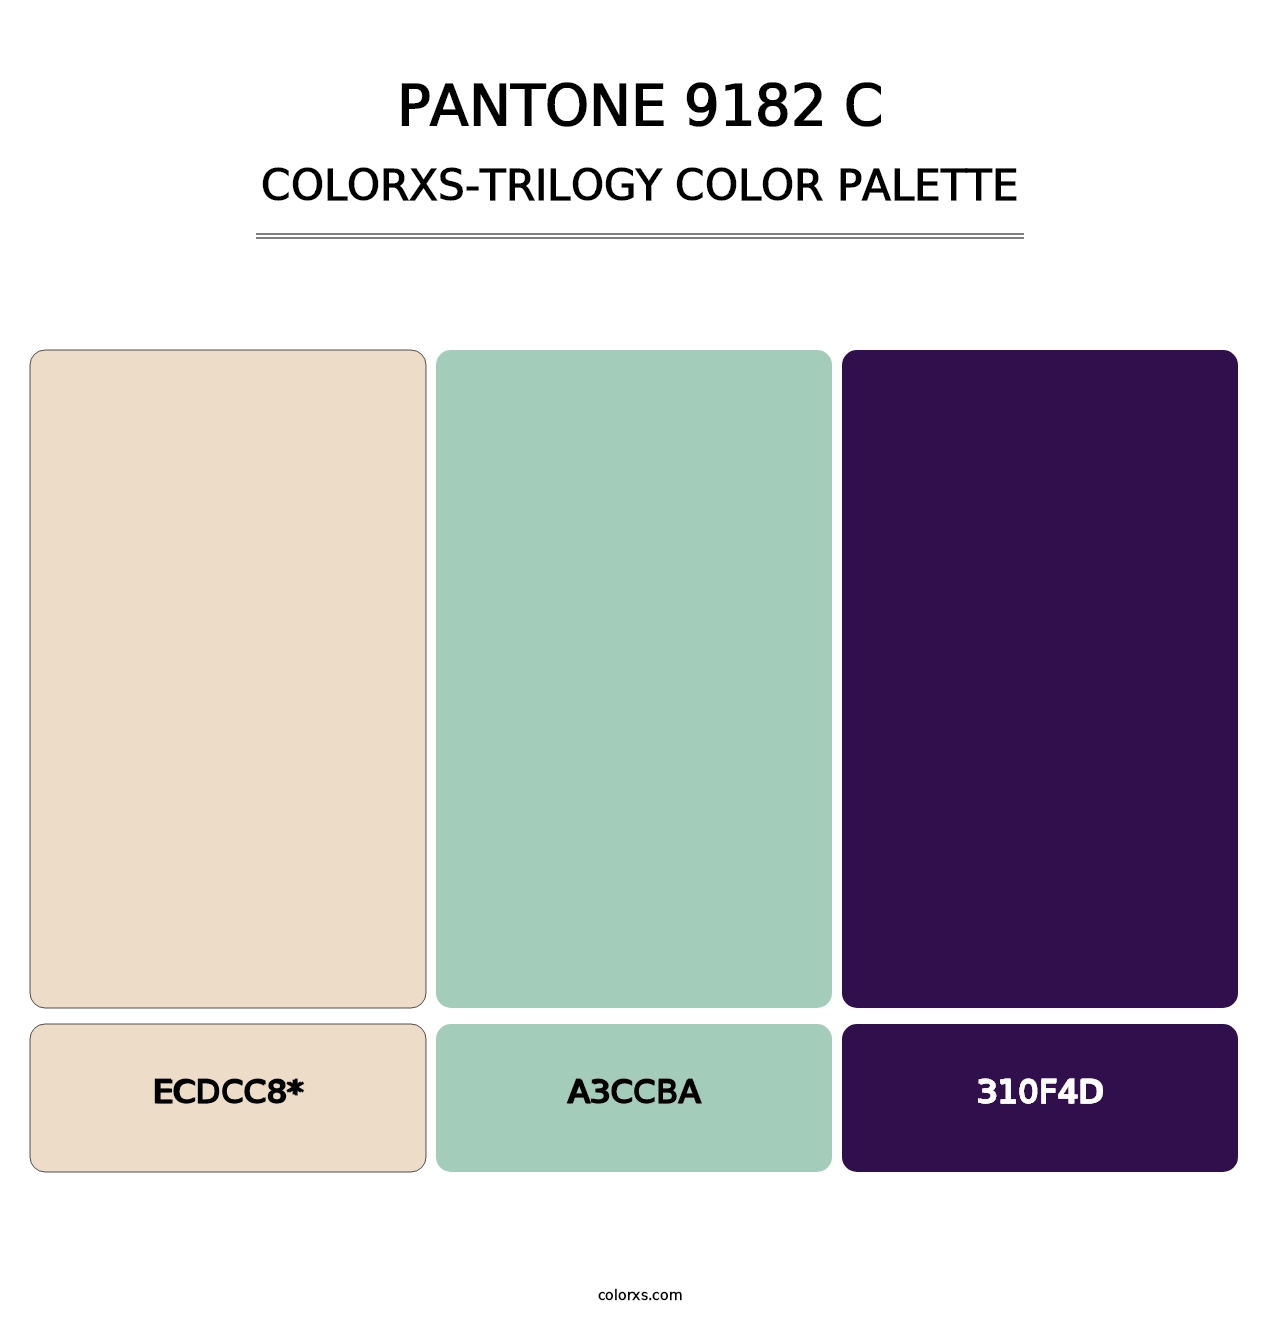 PANTONE 9182 C - Colorxs Trilogy Palette